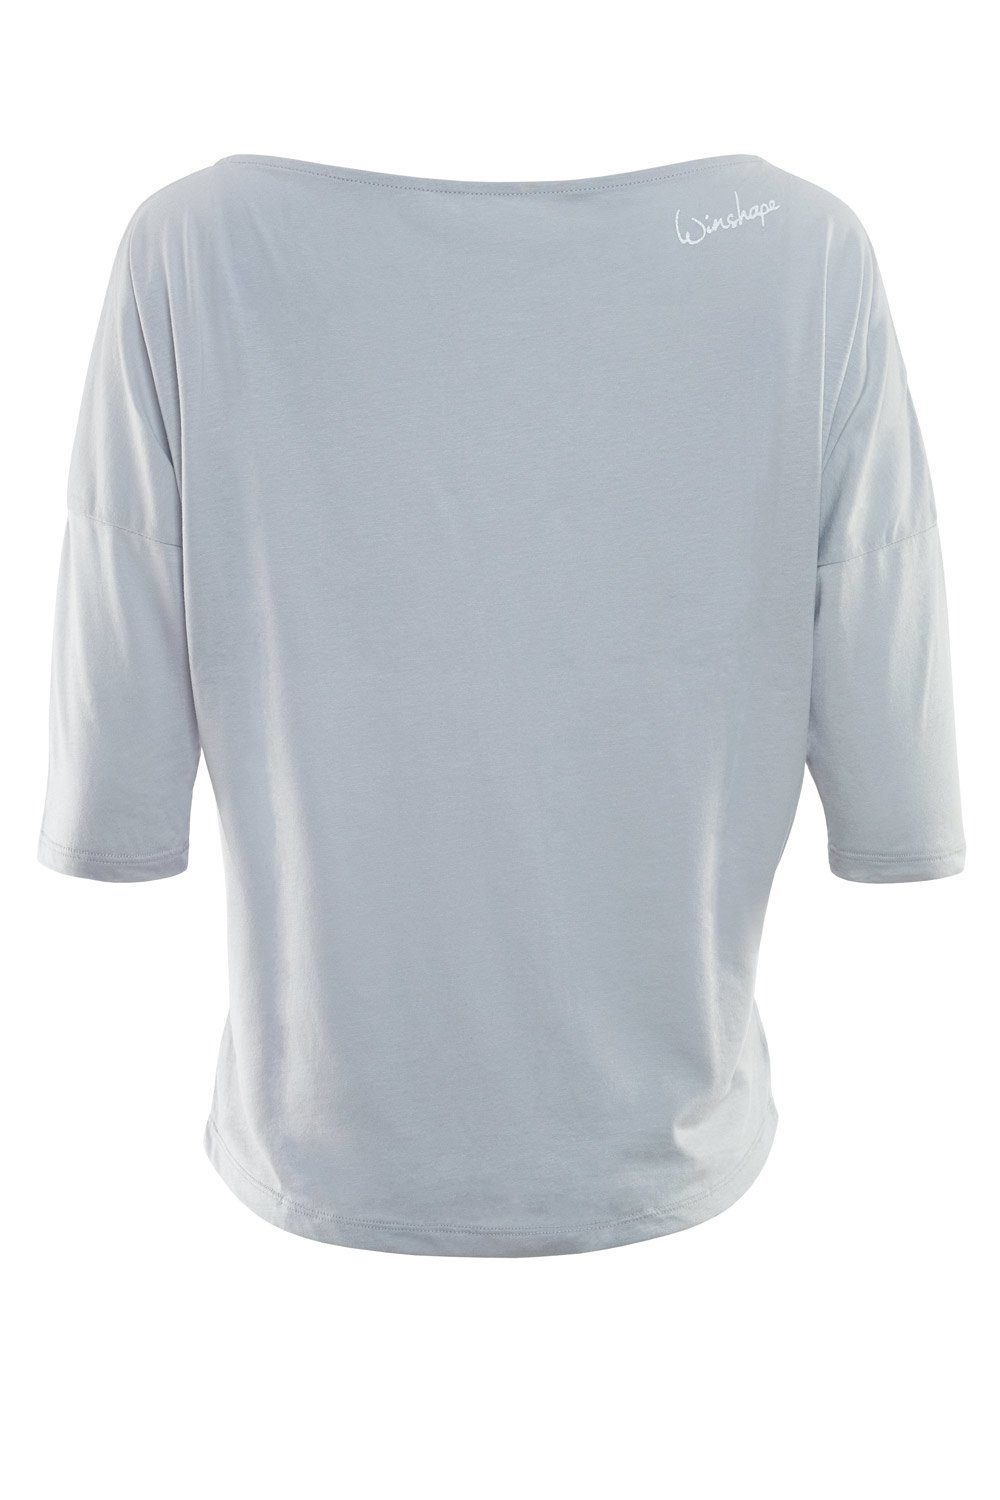 Winshape 3/4-Arm-Shirt MCS001 ultra leicht Glitzer-Aufdruck grey weißem cool weiß mit - glitzer